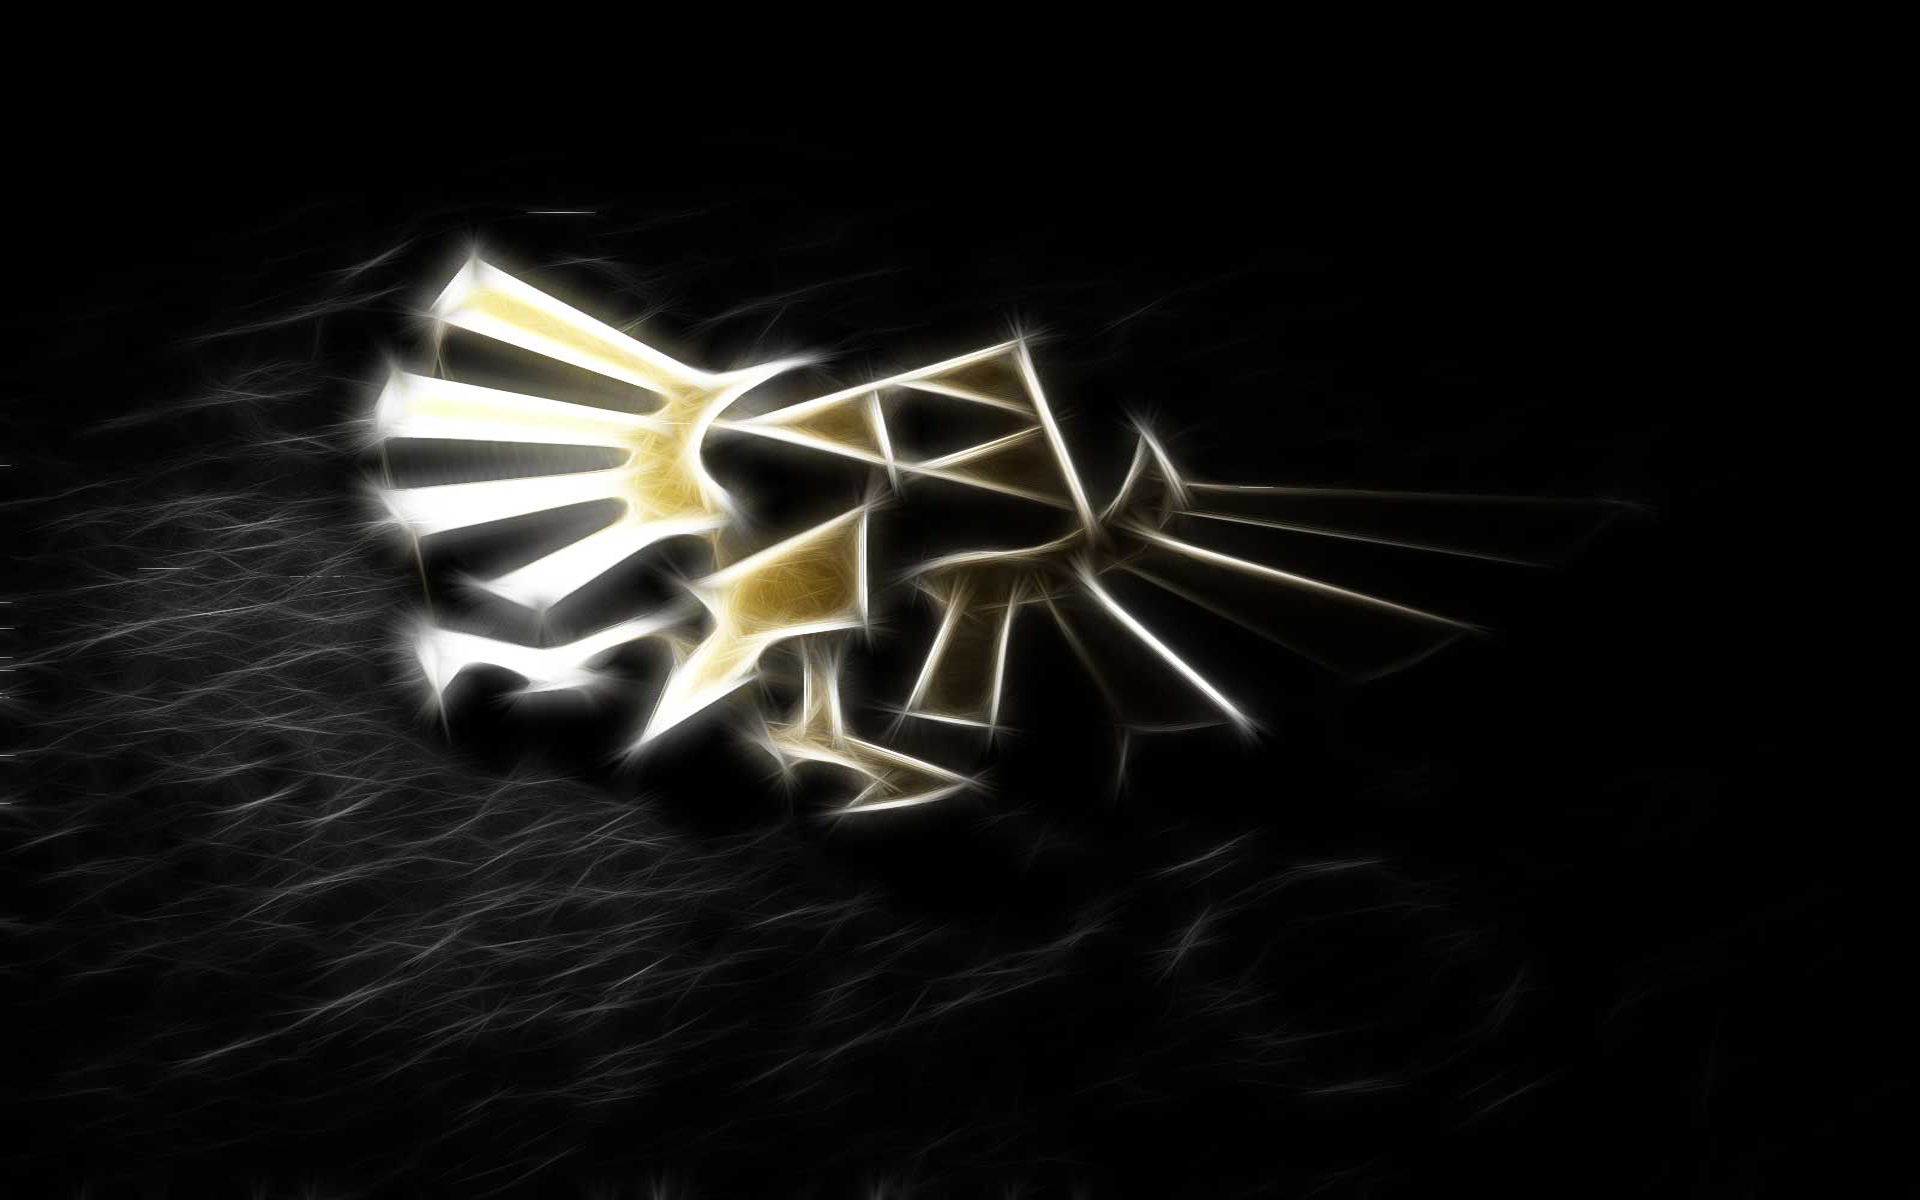 Zelda's iconic Triforce emblem in high definition desktop wallpaper.